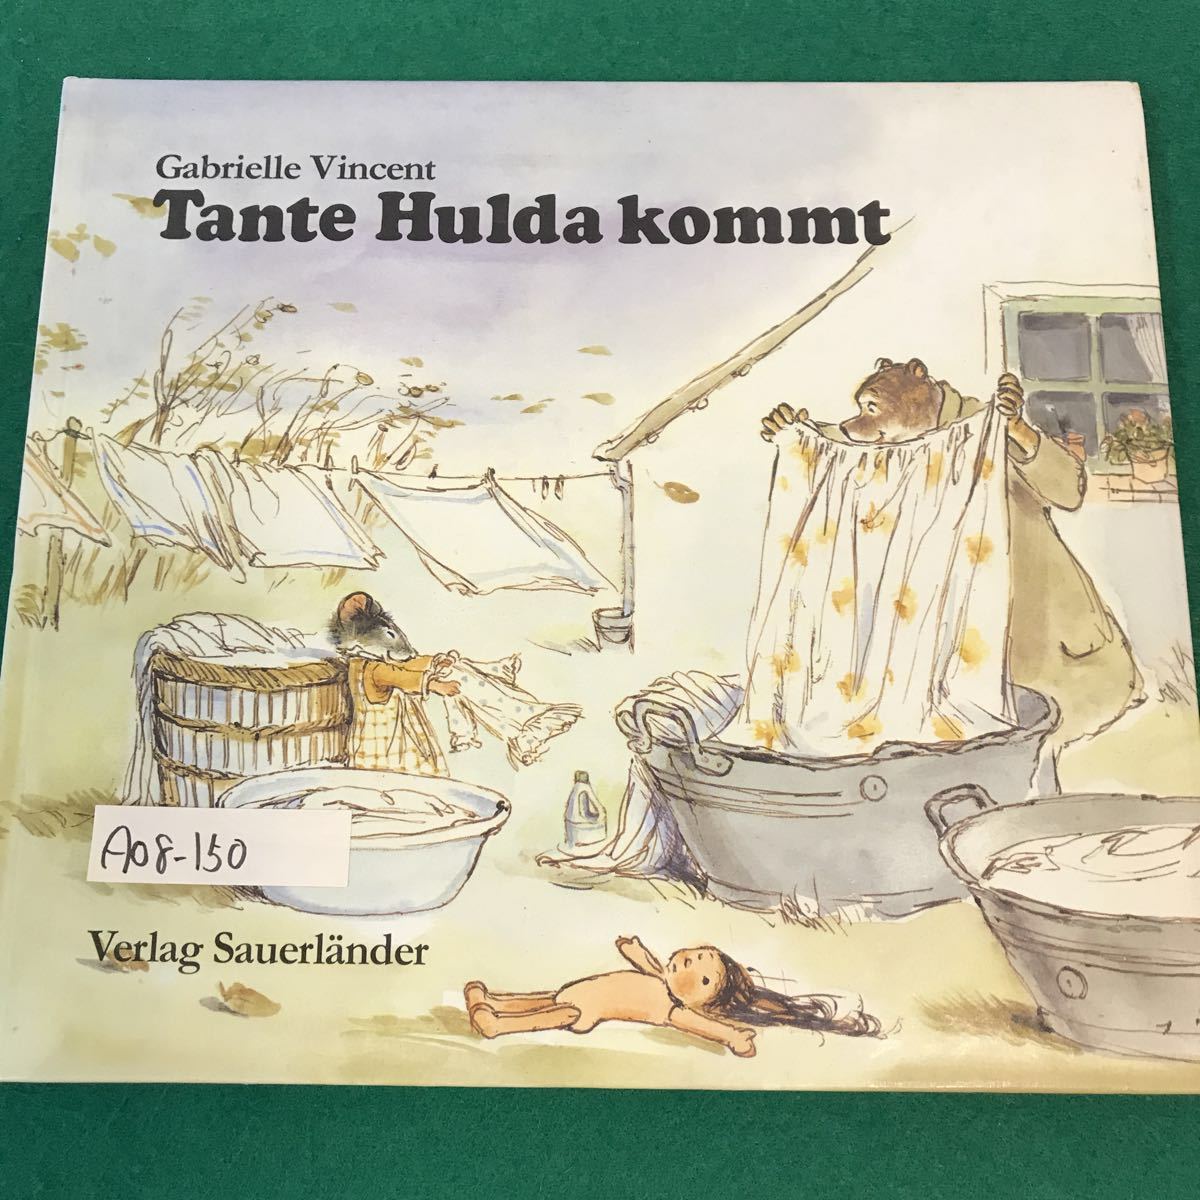 A08-150 洋書・絵本。Gabrielle Vincent Tante Hulda Kommt 著者・Verlag Sauerlander 1988年発行。